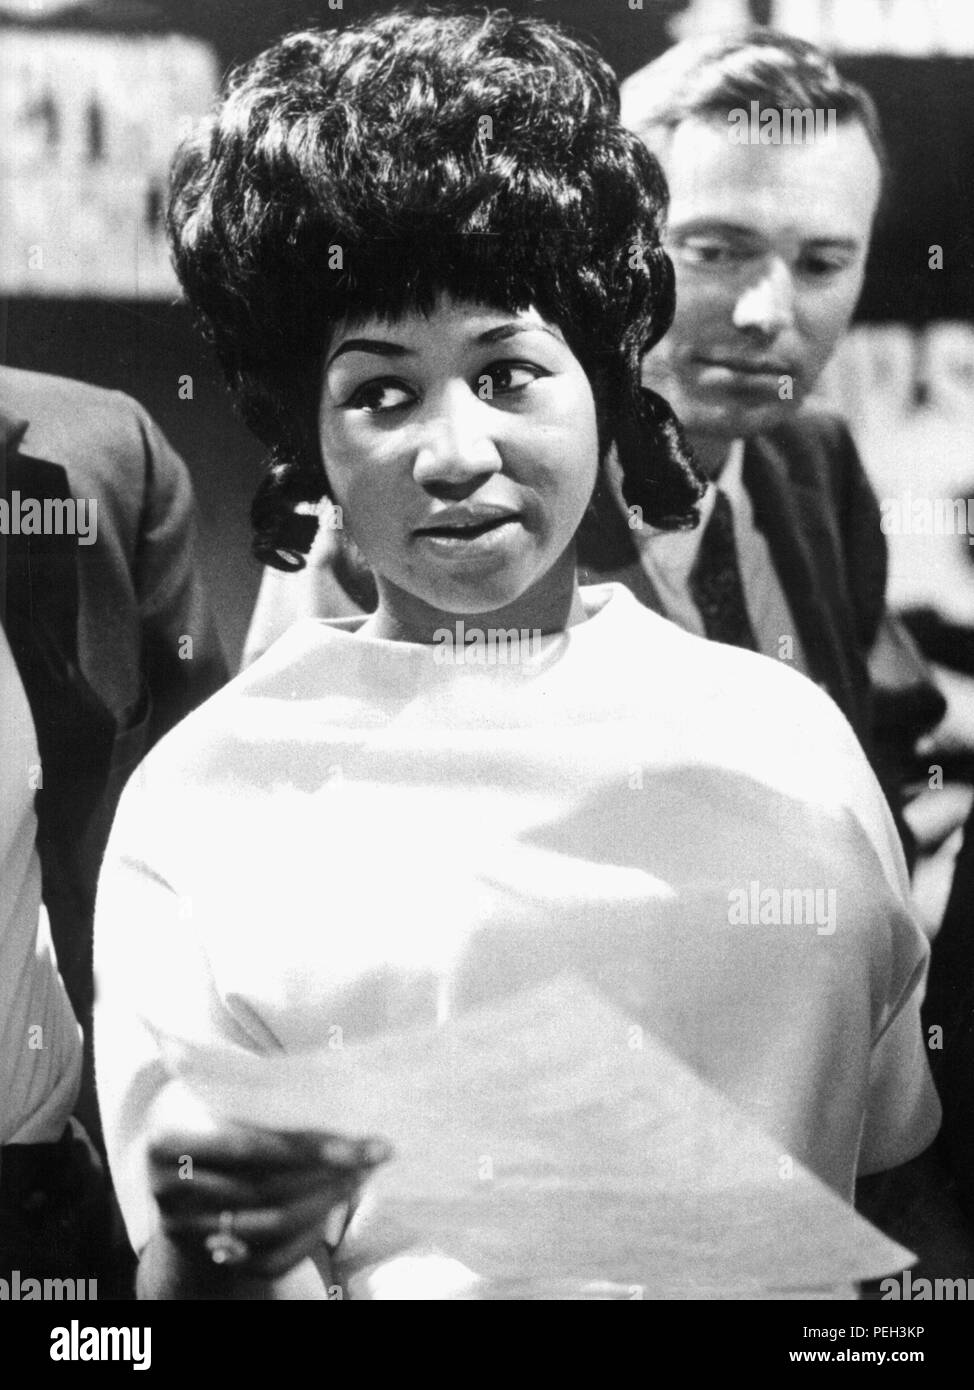 (Archivo) - Un dpa fotografía de archivo fechada el 13 de mayo de 1968 muestra el cantante de soul estadounidense Aretha Franklin durante la grabación de un programa de televisión en un estudio en Colonia, Alemania. El 25 de marzo de 2012 el legendario cantante gira 70. Foto: dpa | uso en todo el mundo Foto de stock